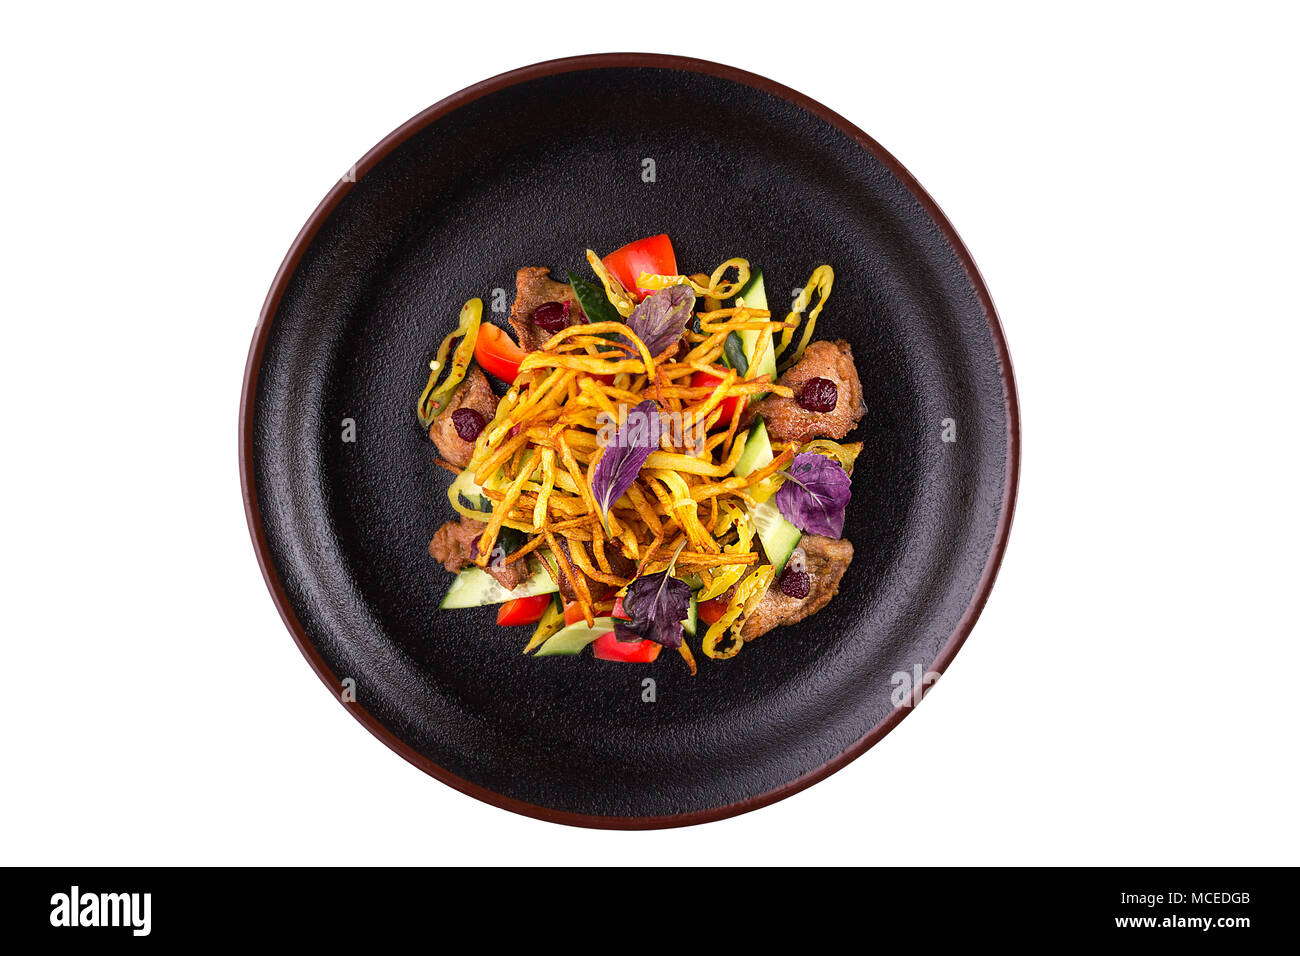 Nahrhafte Salat Gemüse und Fleisch mit Tomate und Huhn Scheiben, serviert auf einem weißen Teller. Auf weissem Hintergrund. Stockfoto